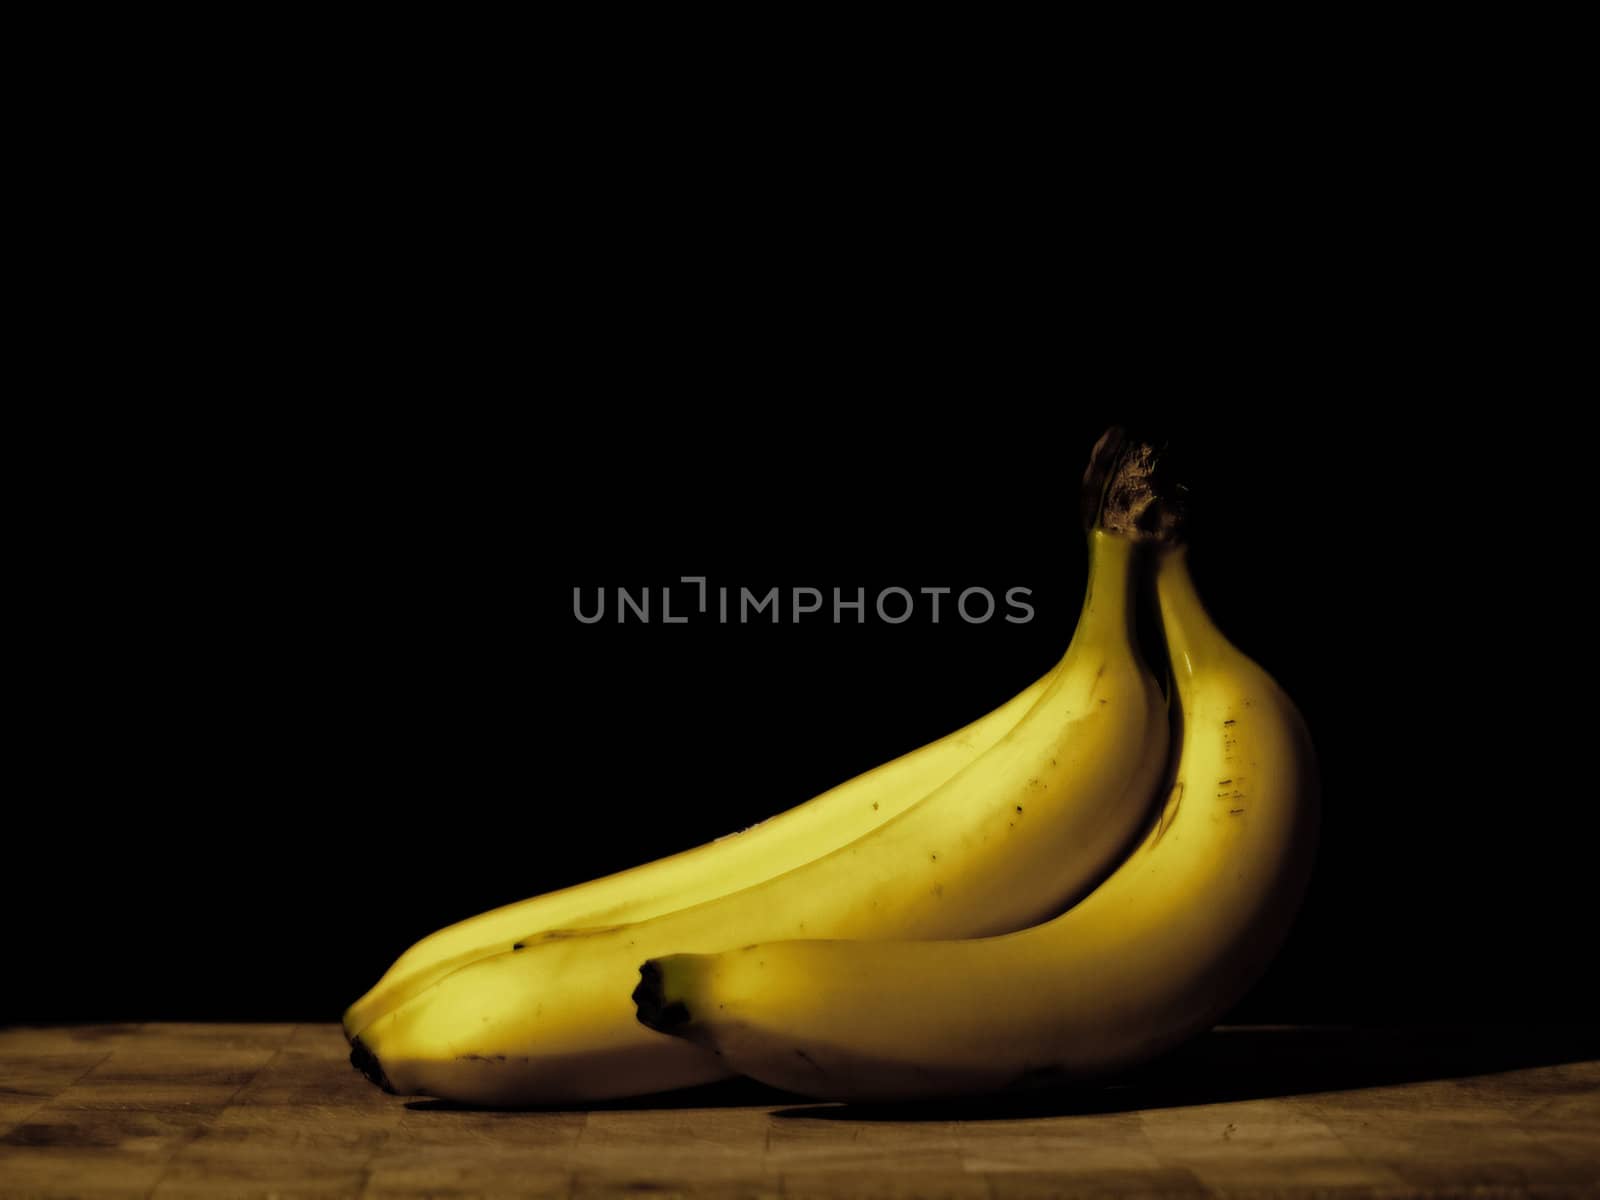 Three fresh bananas on a cutting board shot on a black background.